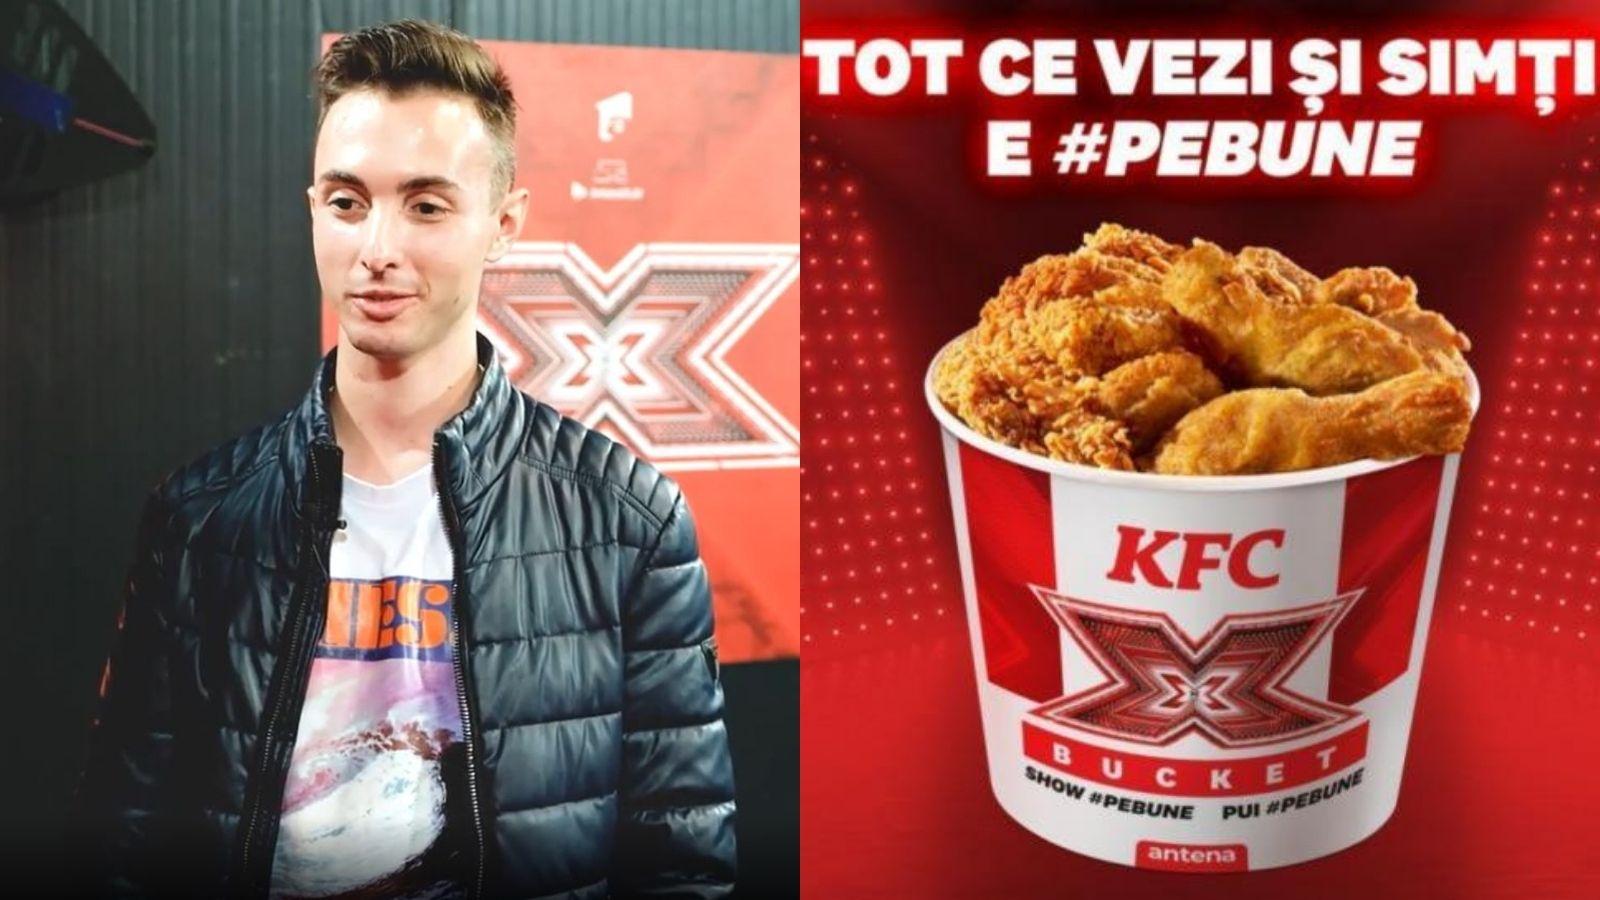 Claudiu Chichirău răspunde provocării #pebune făcută de KFC. Ce a dezvăluit